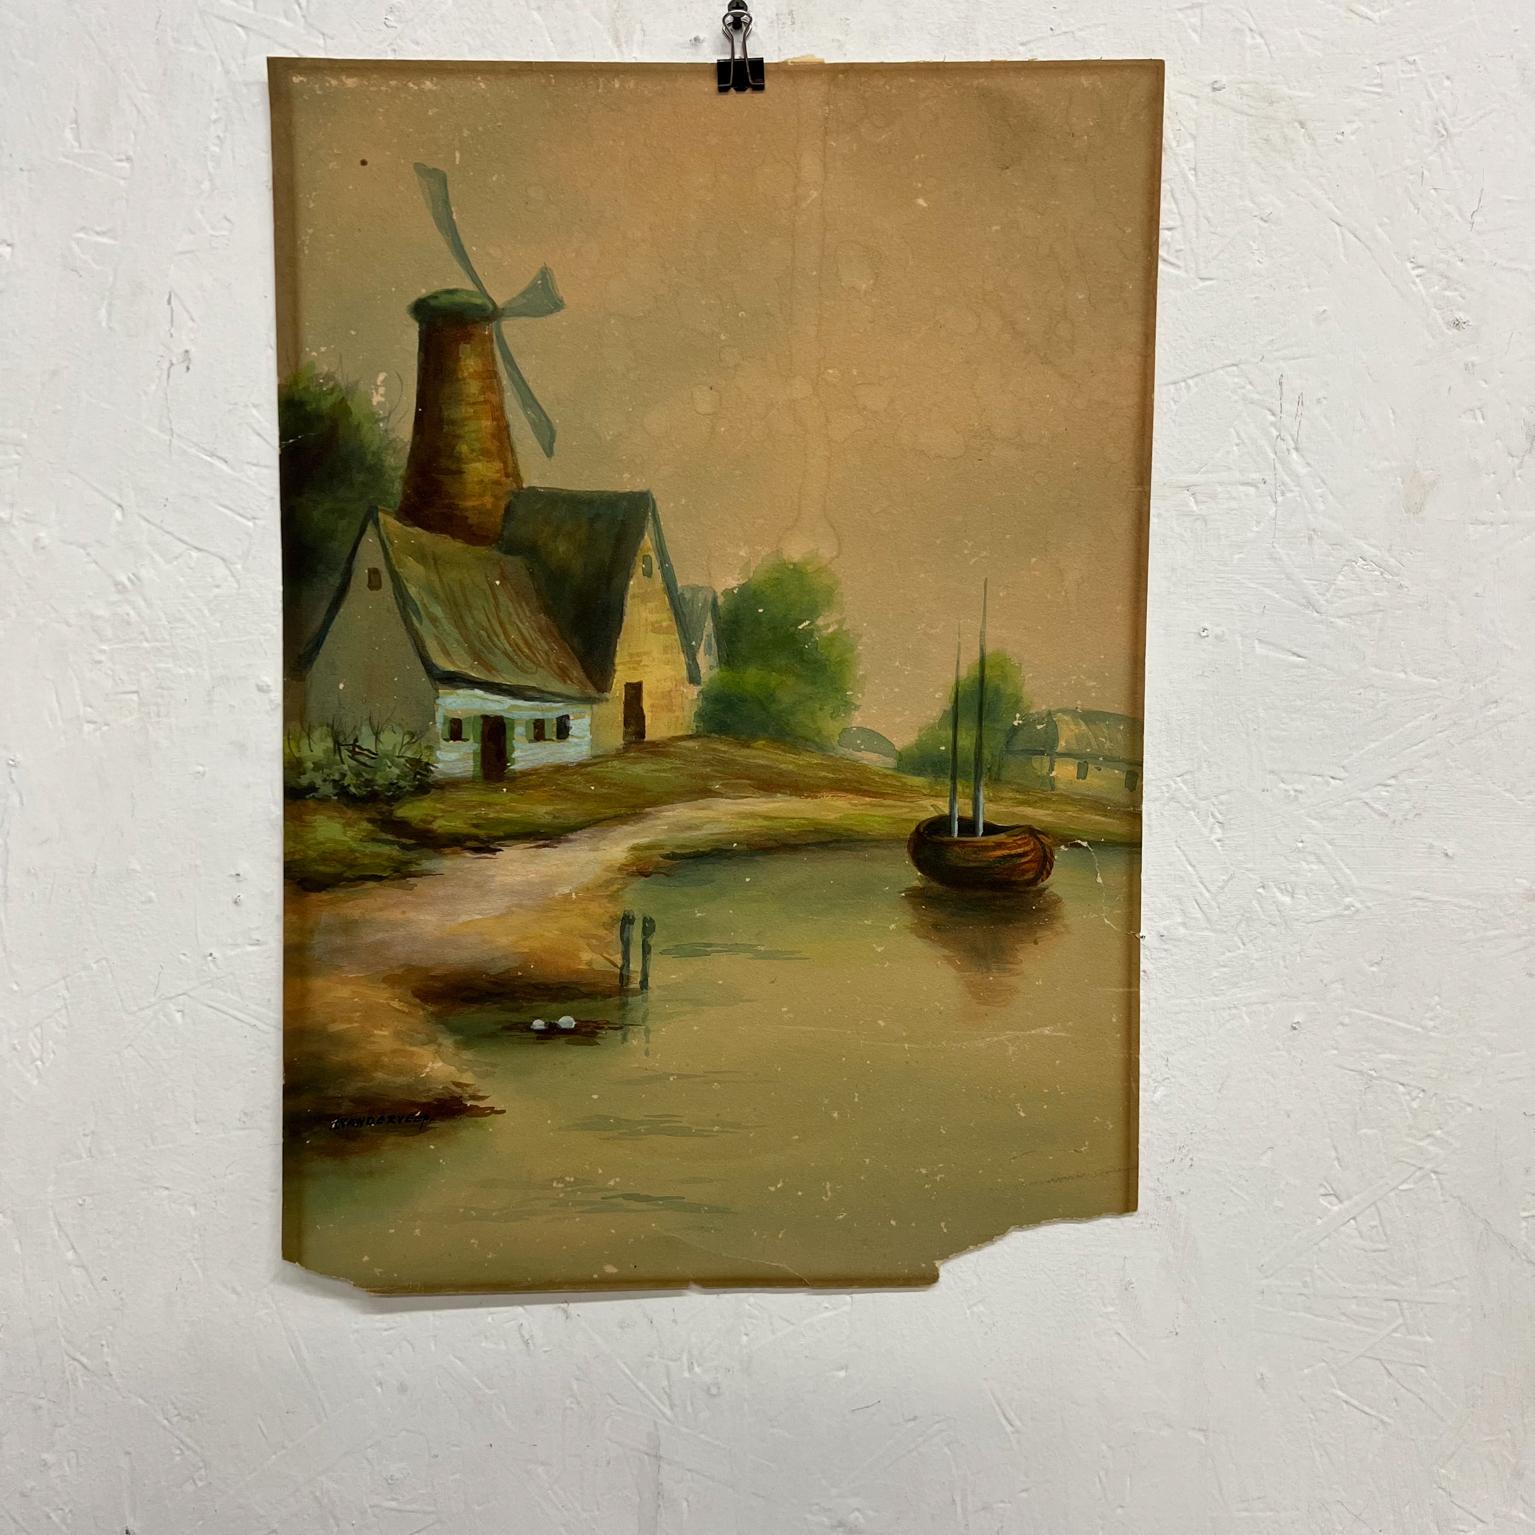 1950er Jahre Vintage Art Aquarell malerischen Holland Landschaft Windmühle See & Boot 
Maße: 14.25 x 20.15
Unterzeichnet, kann nicht lesen.
Distressed unrestaurierten Vintage-Zustand Papier hat einen Riss in der unteren rechten Ecke.
Alle Bilder